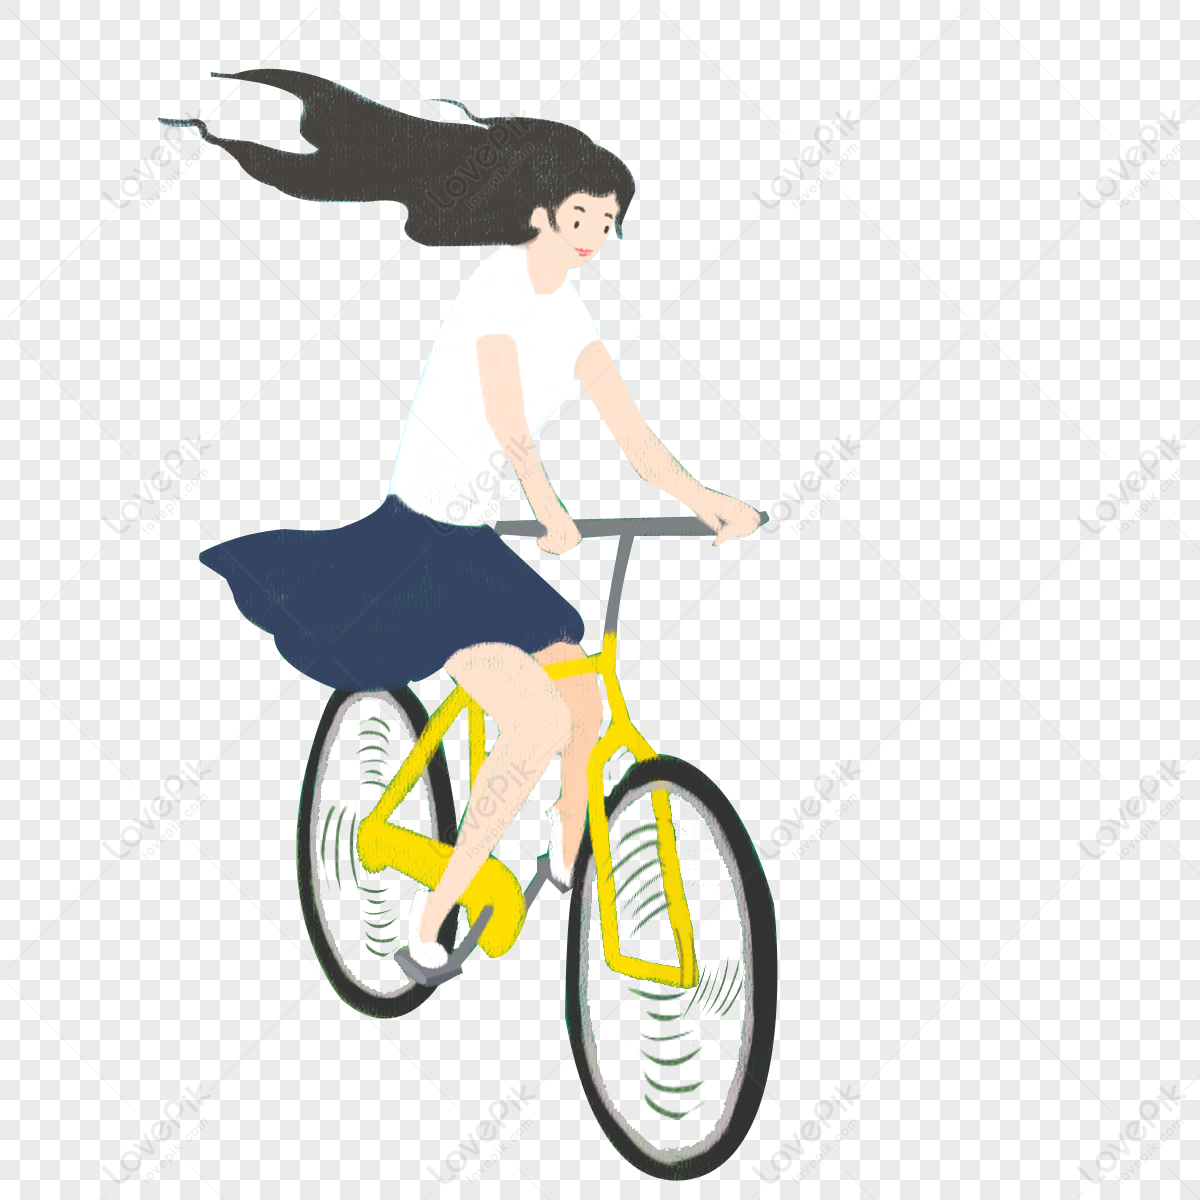 Hình ảnh cô gái đi xe đạp không chỉ đem đến cảnh quan tươi đẹp mà còn là biểu tượng của sự giải thoát và tự do. Những bức ảnh về cô gái đi xe đạp sẽ khiến cho bạn thấy cảm giác nhẹ nhàng và thoải mái, dù chỉ trong một khoảnh khắc. Hãy cùng ngắm nhìn những bức ảnh xinh đẹp này để tìm lại sự bình yên và cảm giác tự do.